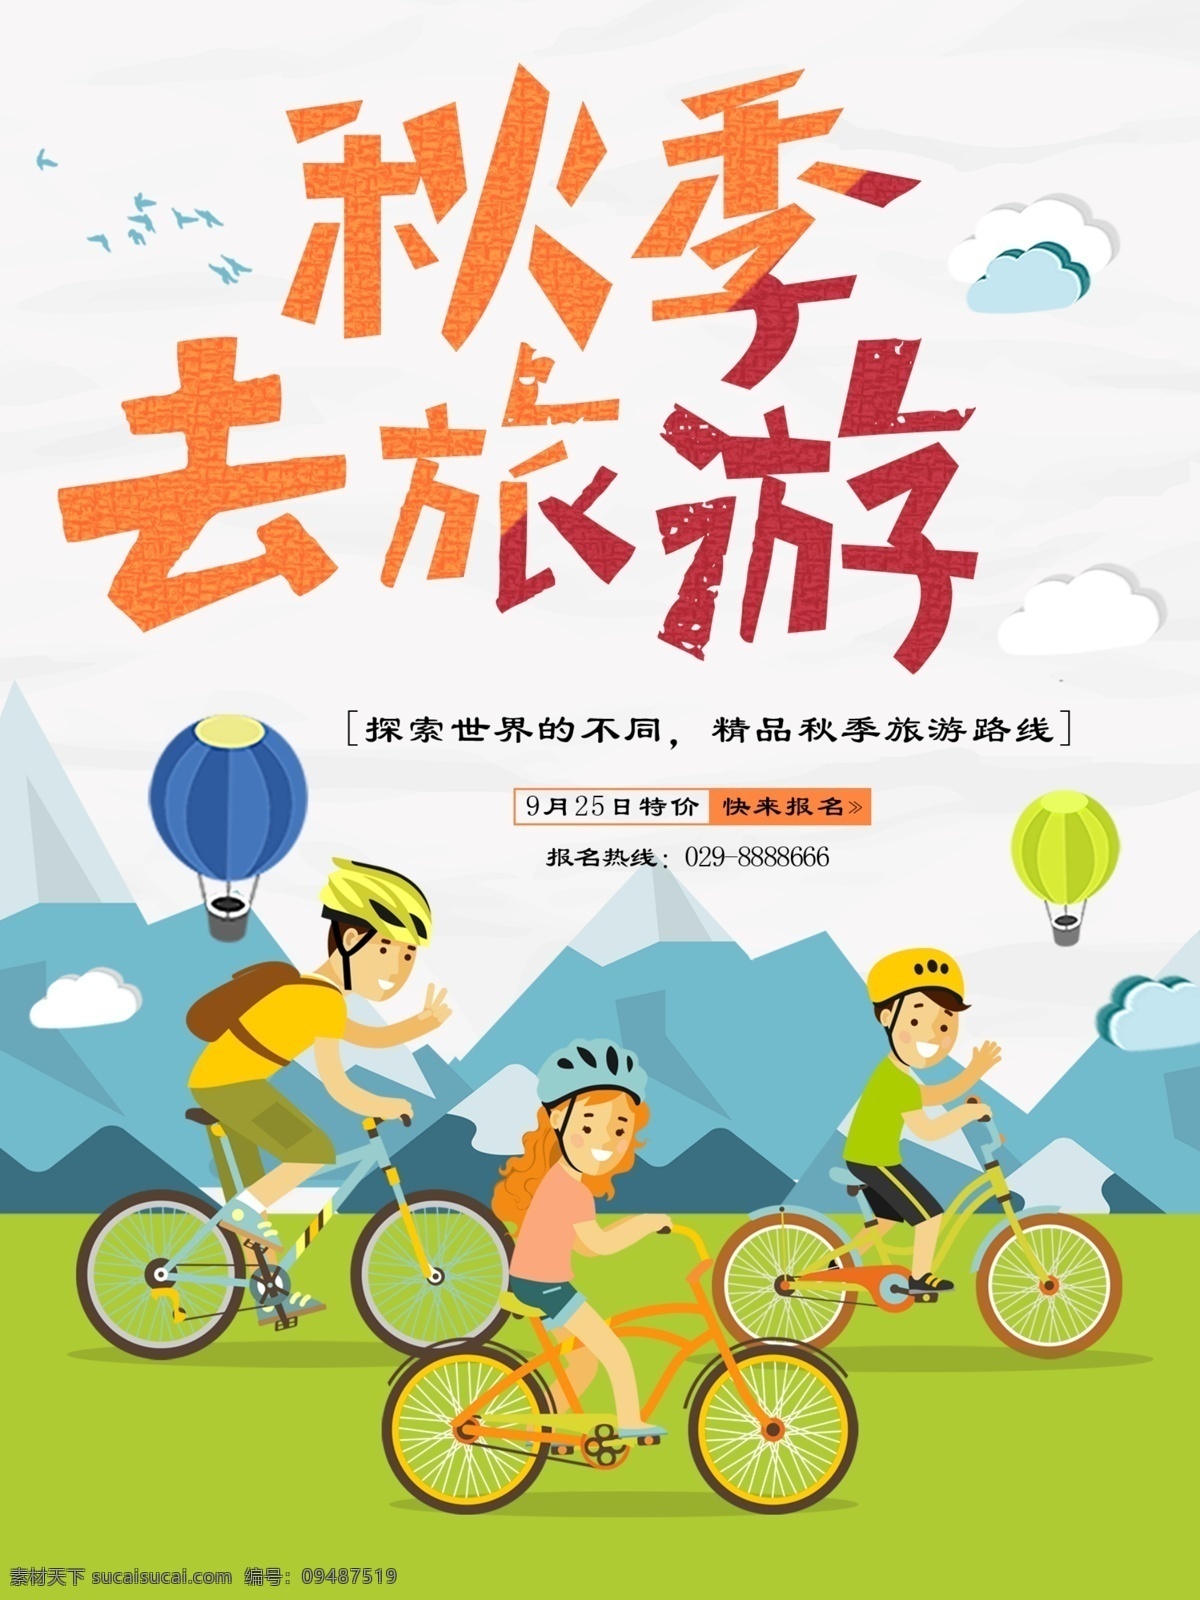 卡通 手绘 插画 秋季 旅游 宣传海报 简约 骑单车的人 扁平风